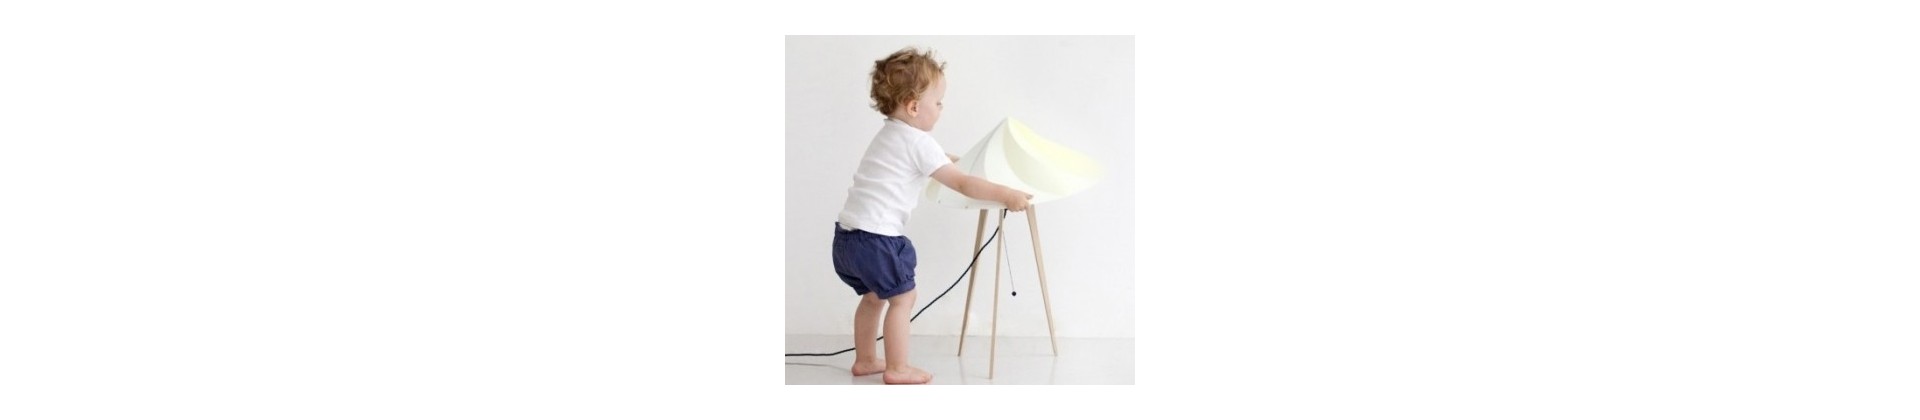 Children's lighting :  lamps & wall lights for kids room